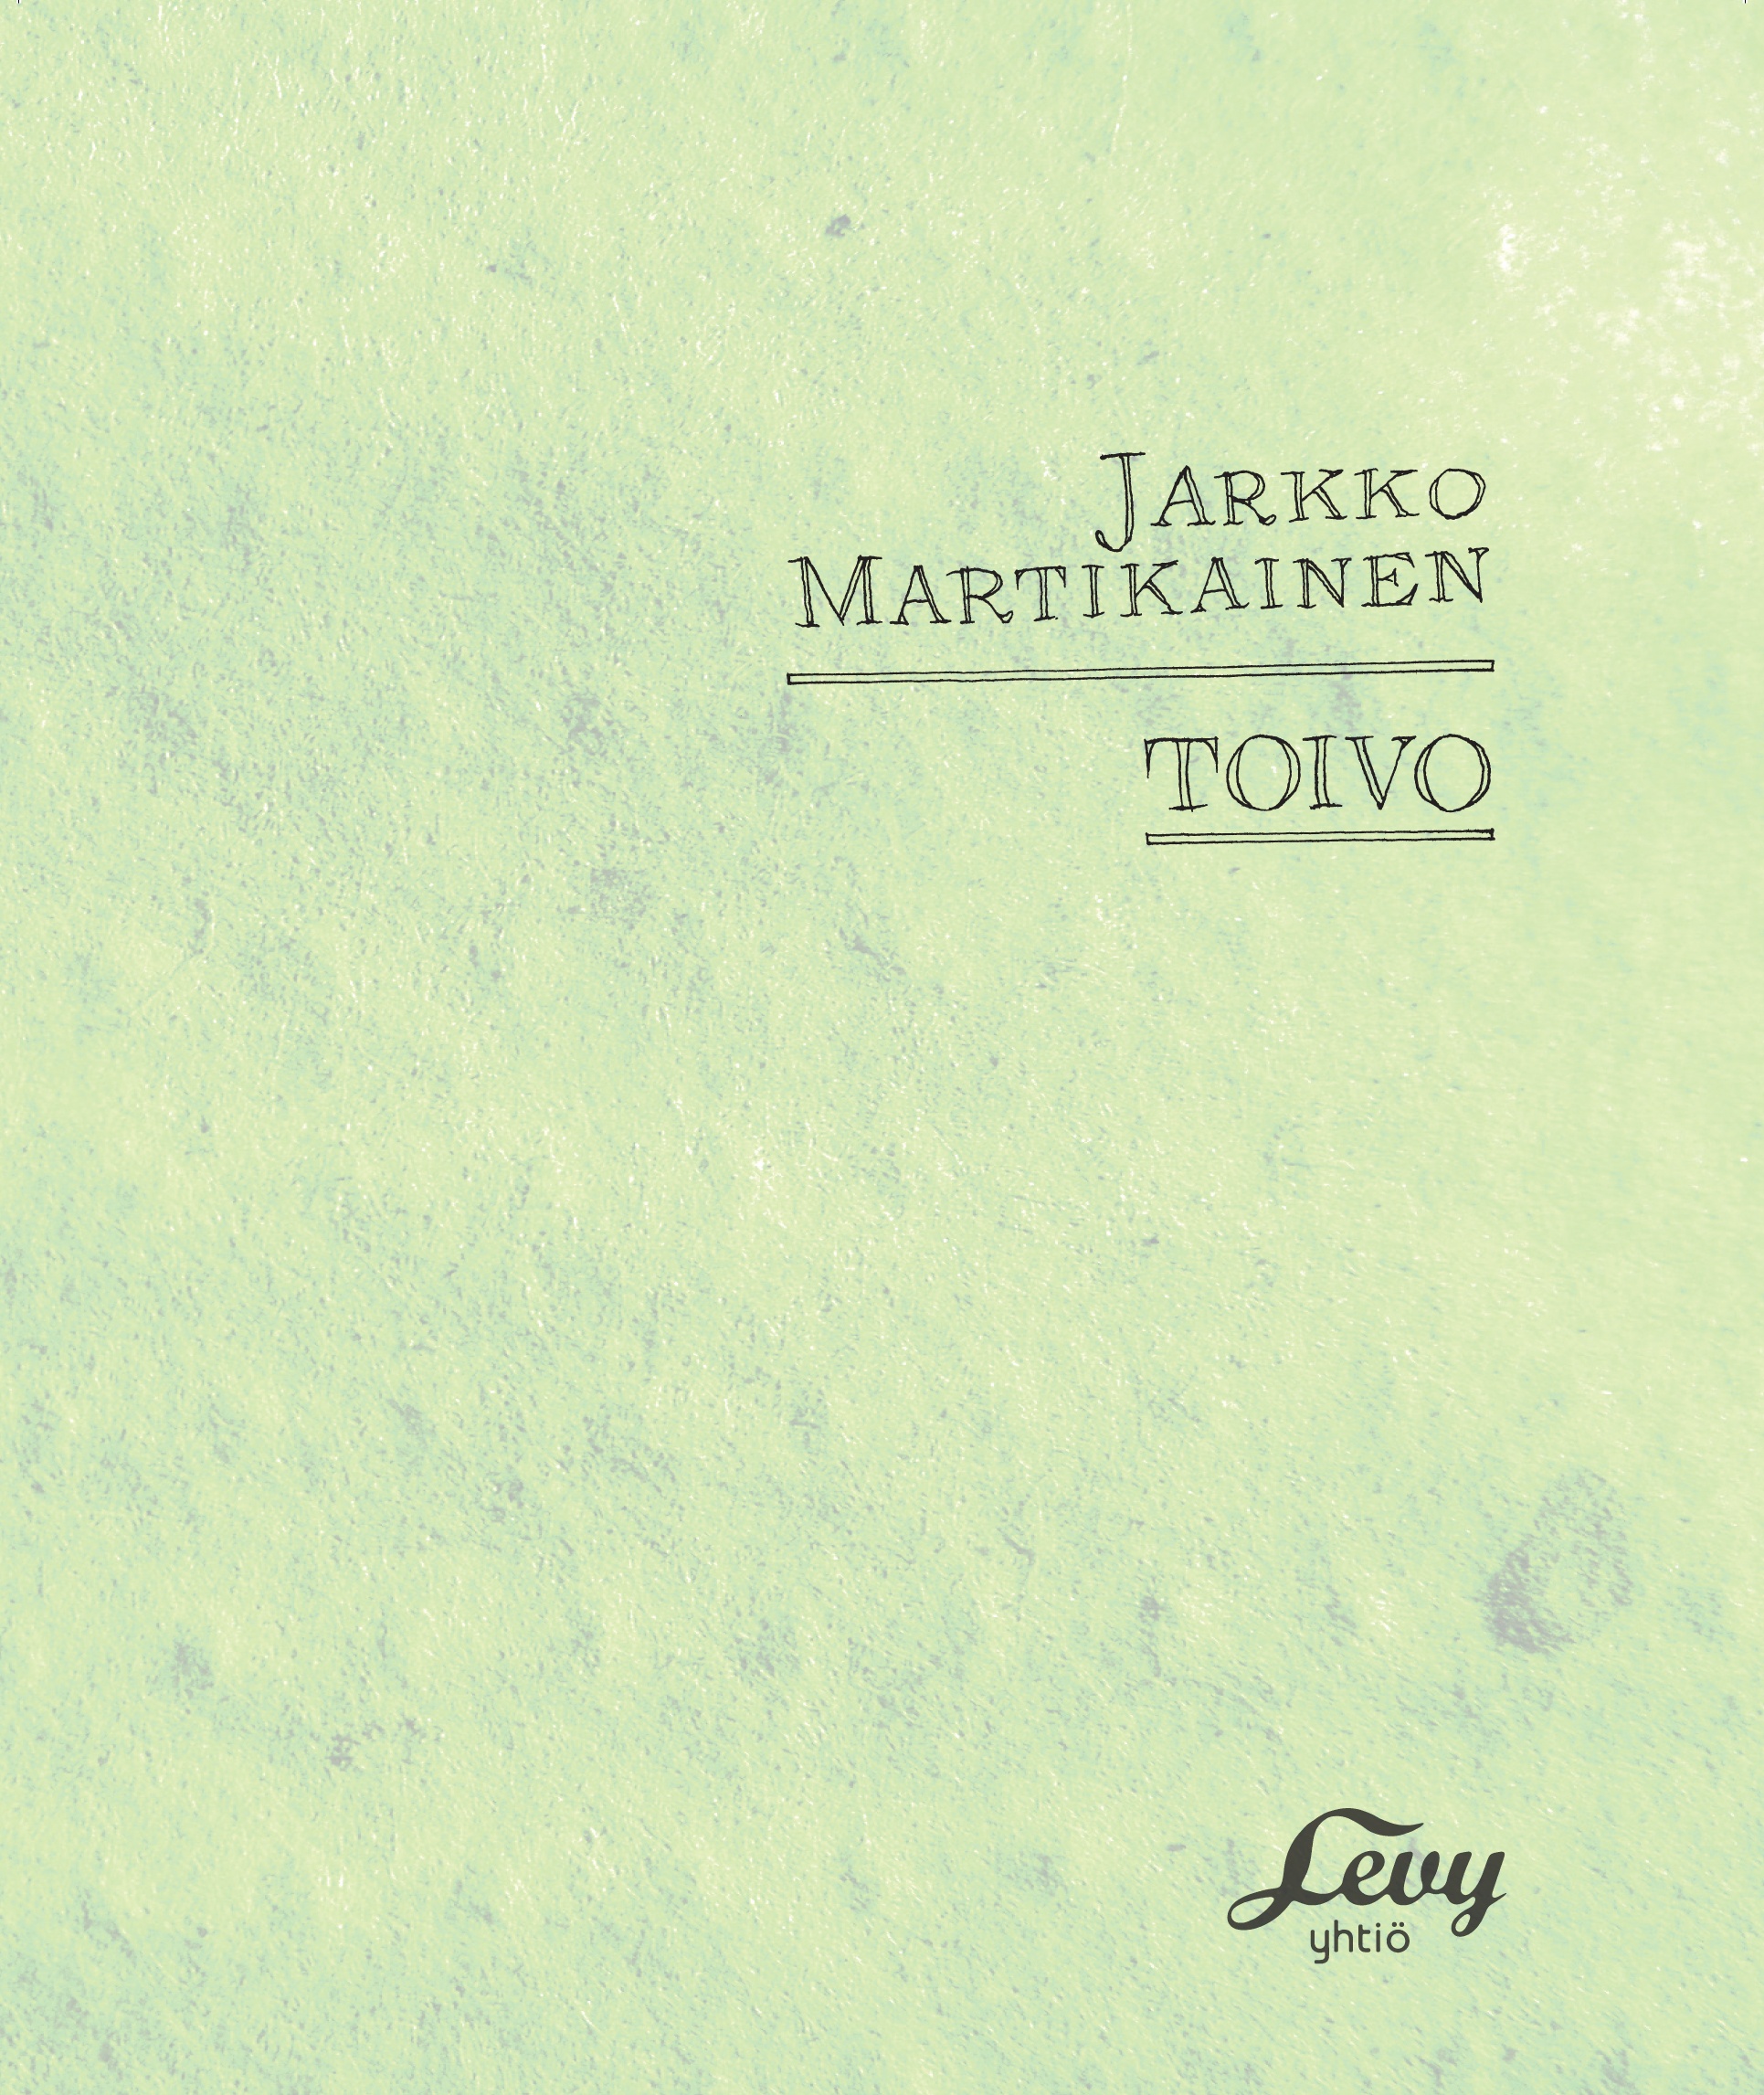 Jarkko Martikainen - Toivo (special version) - CD